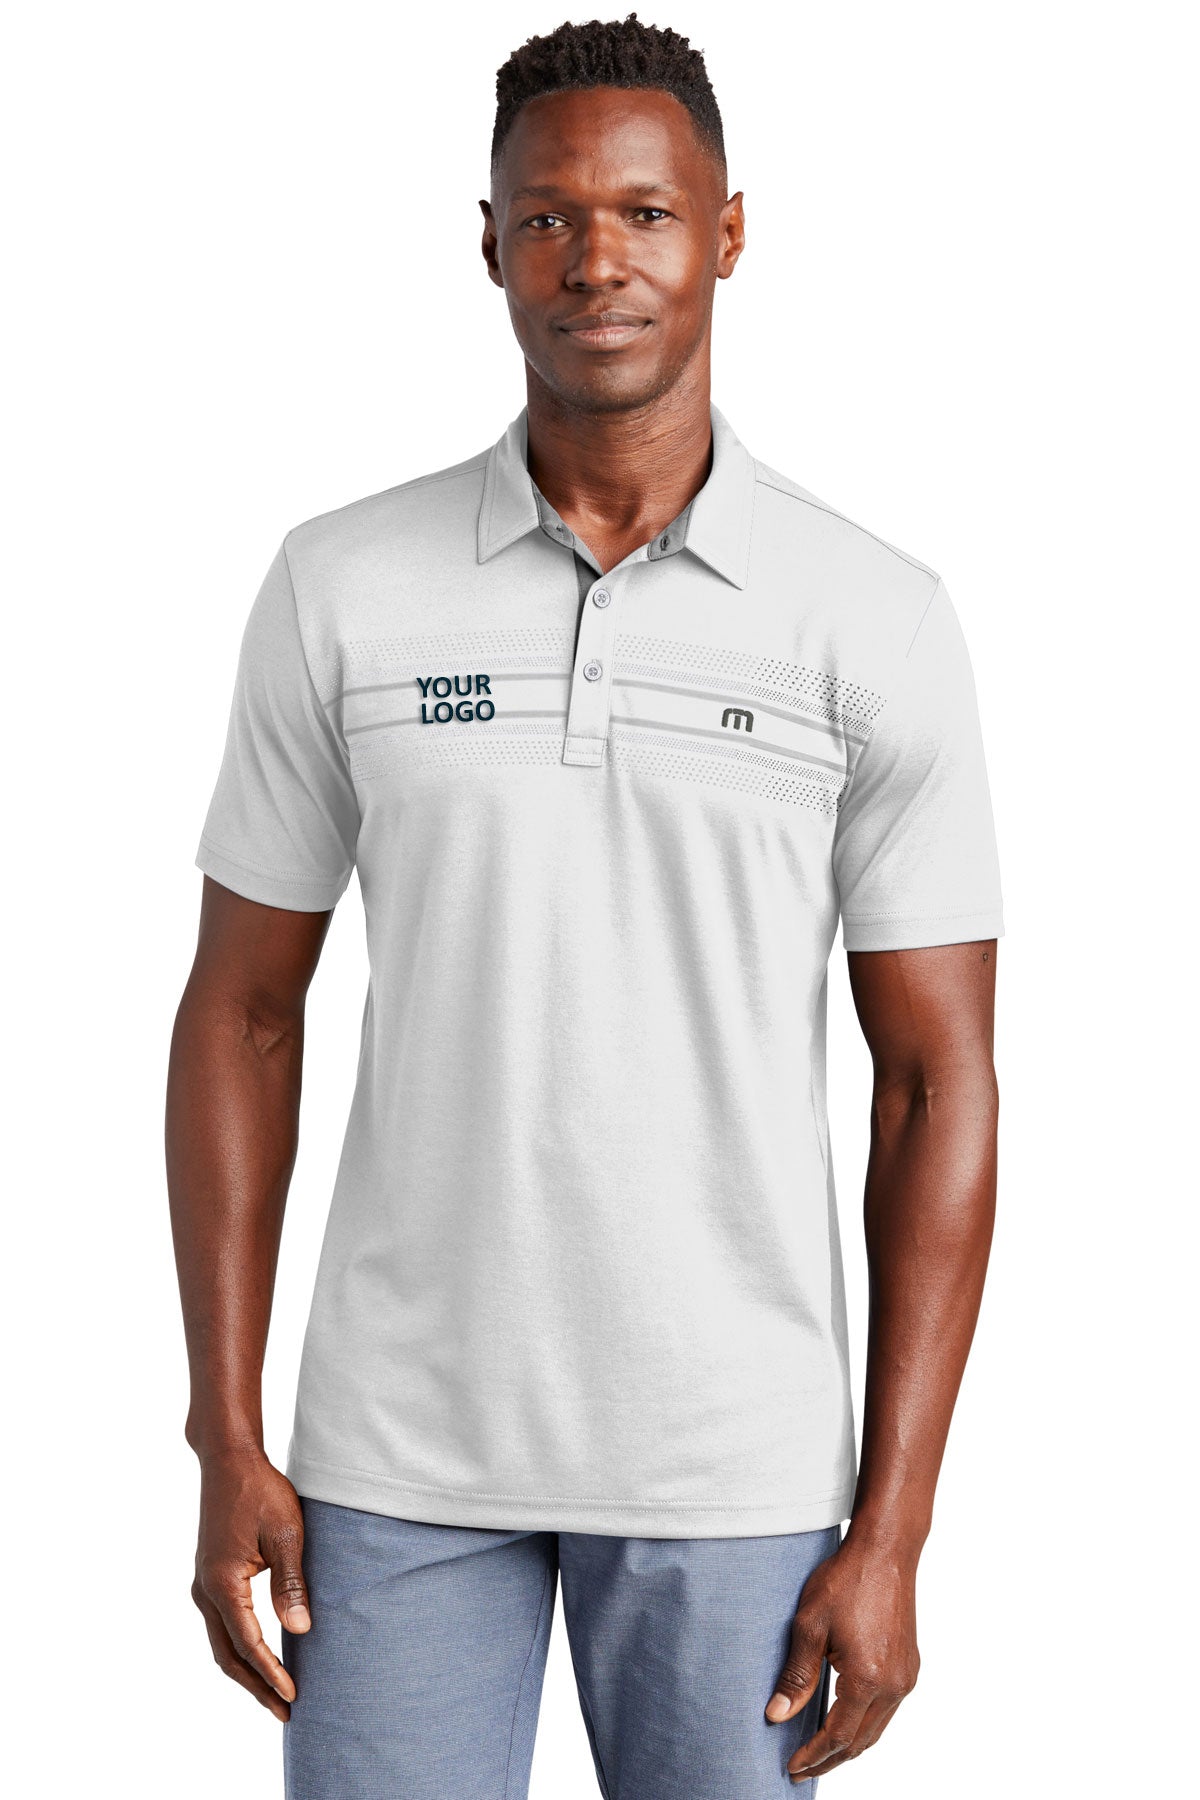 TravisMathew White Polos custom logo polo shirts embroidered